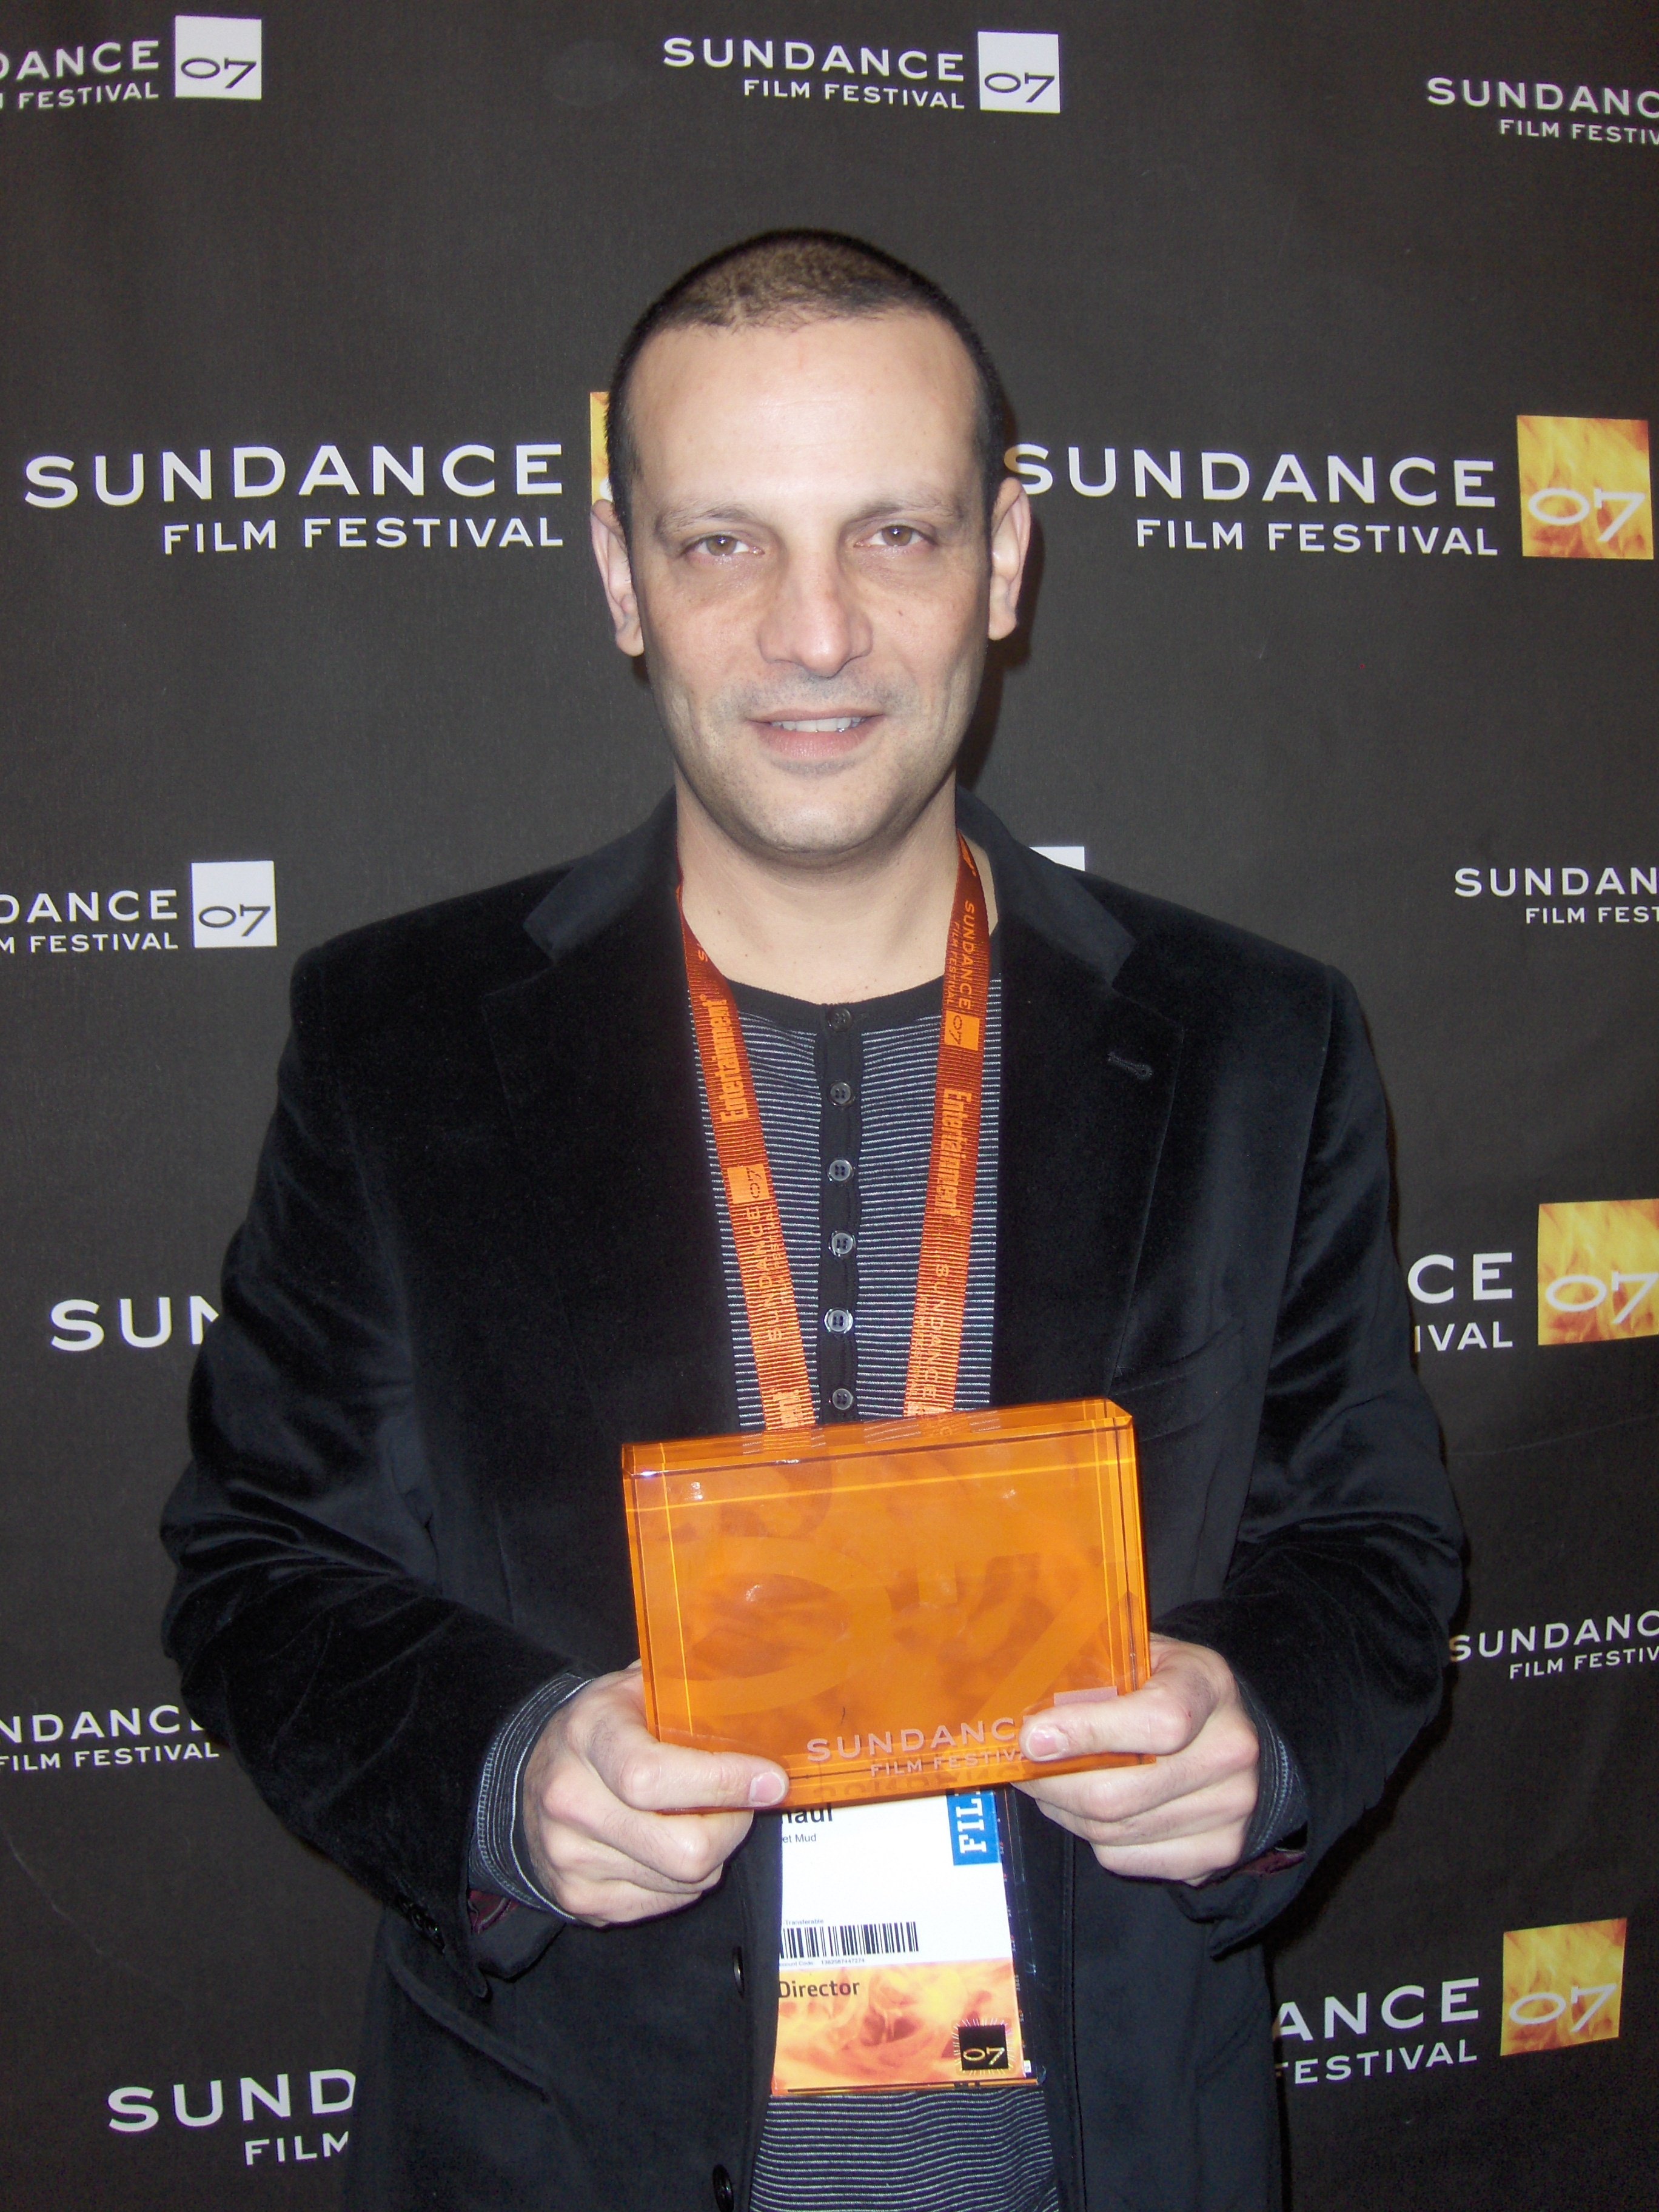 Sundance FF 2007